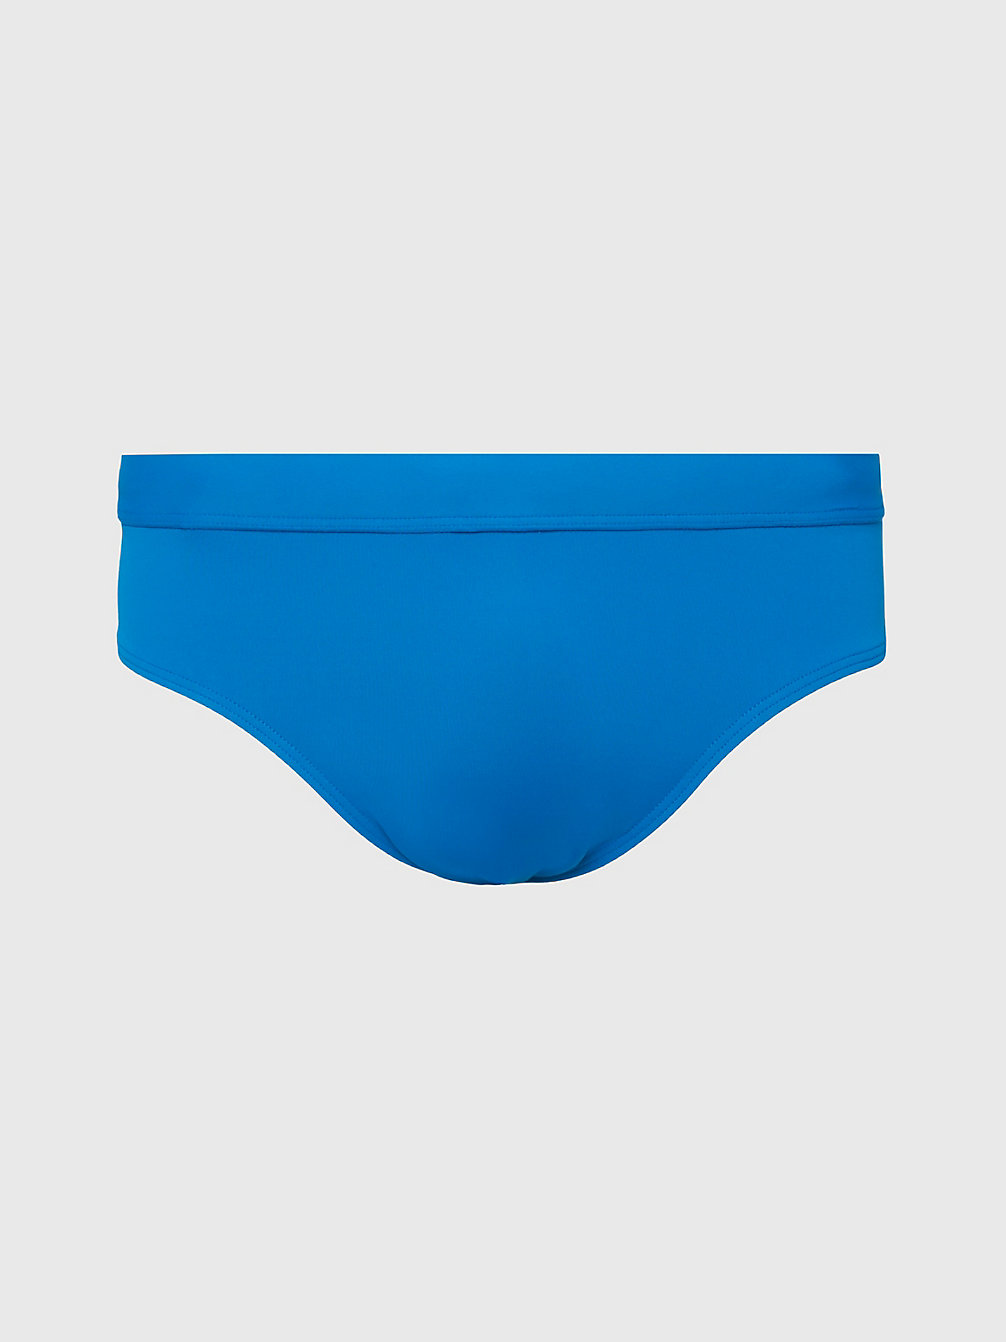 UNITY BLUE Swim Briefs - Intense Power undefined men Calvin Klein